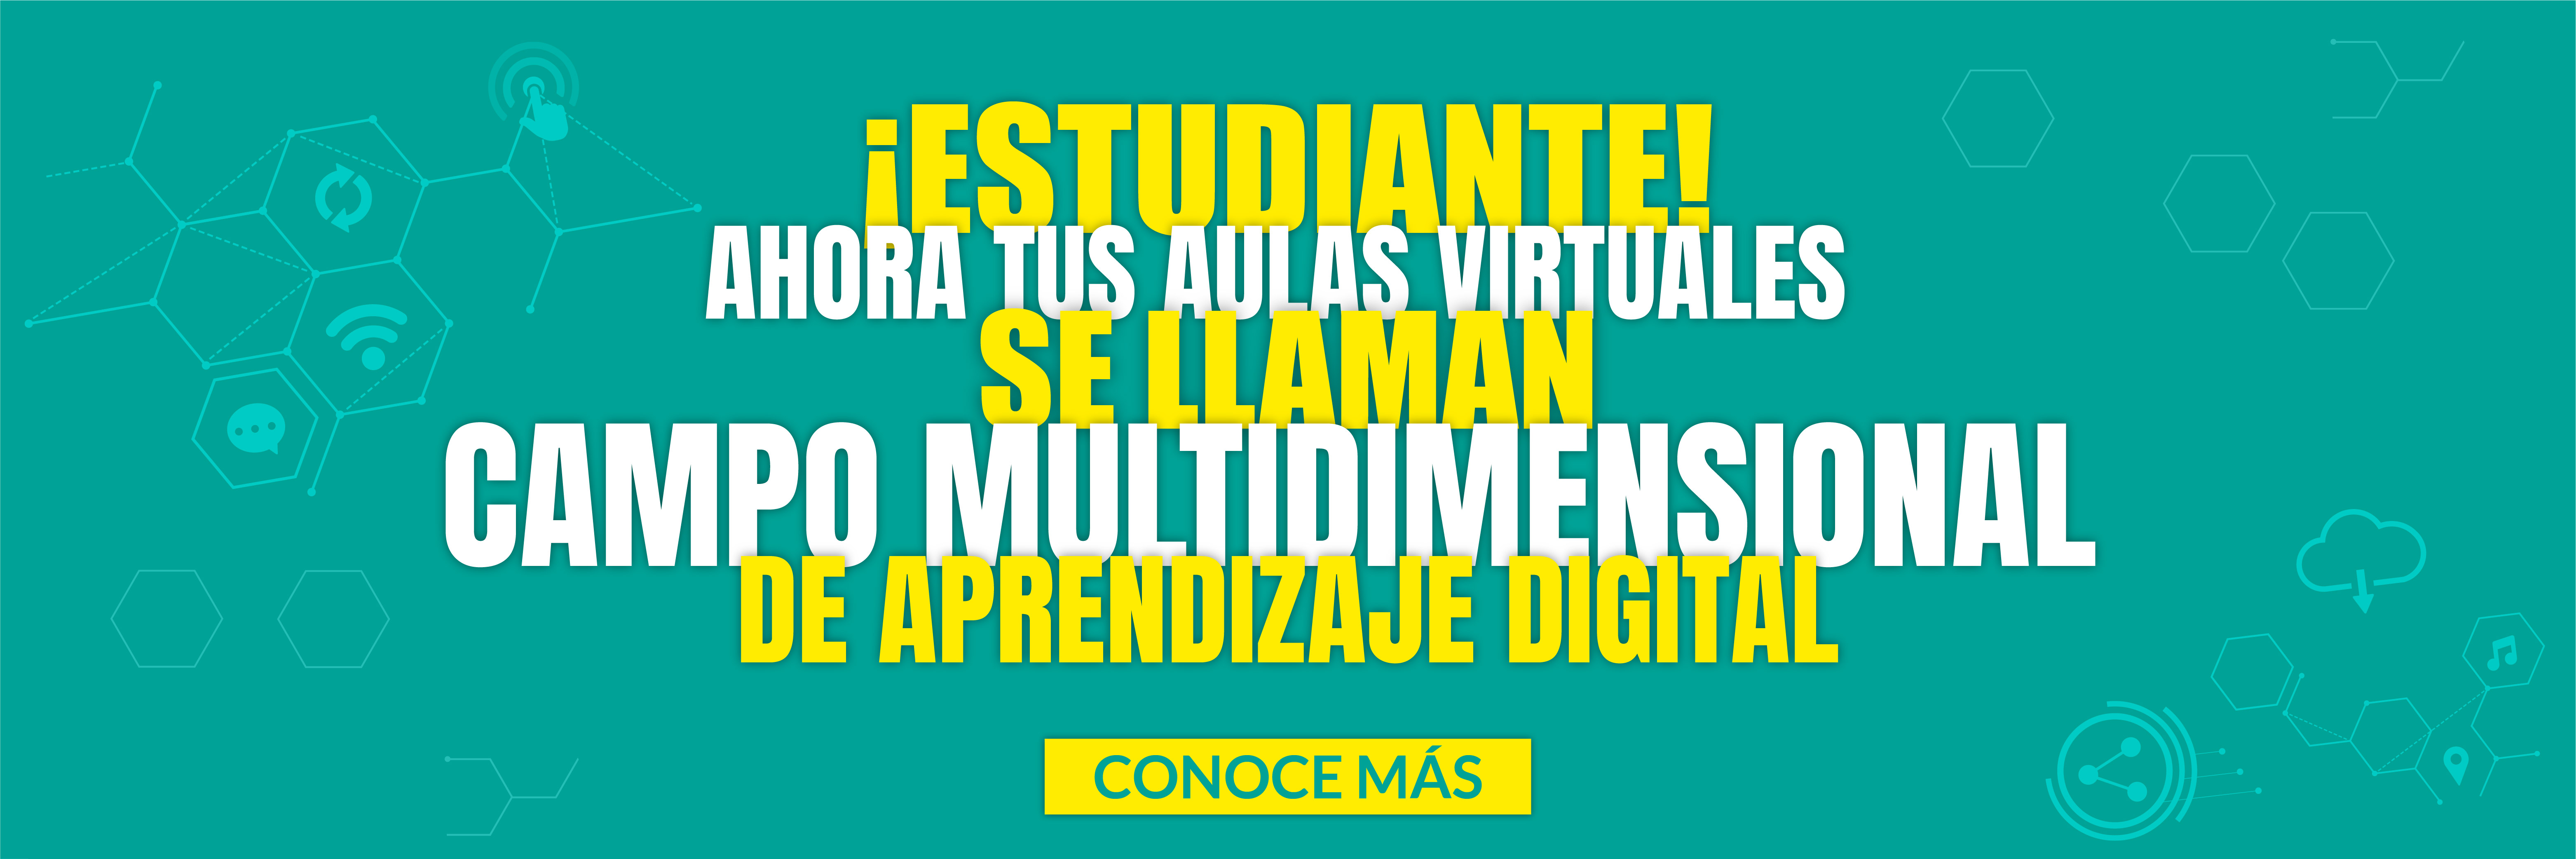 ahora tus aulas virtuales se llaman campo multidimensional de aprendizaje digital